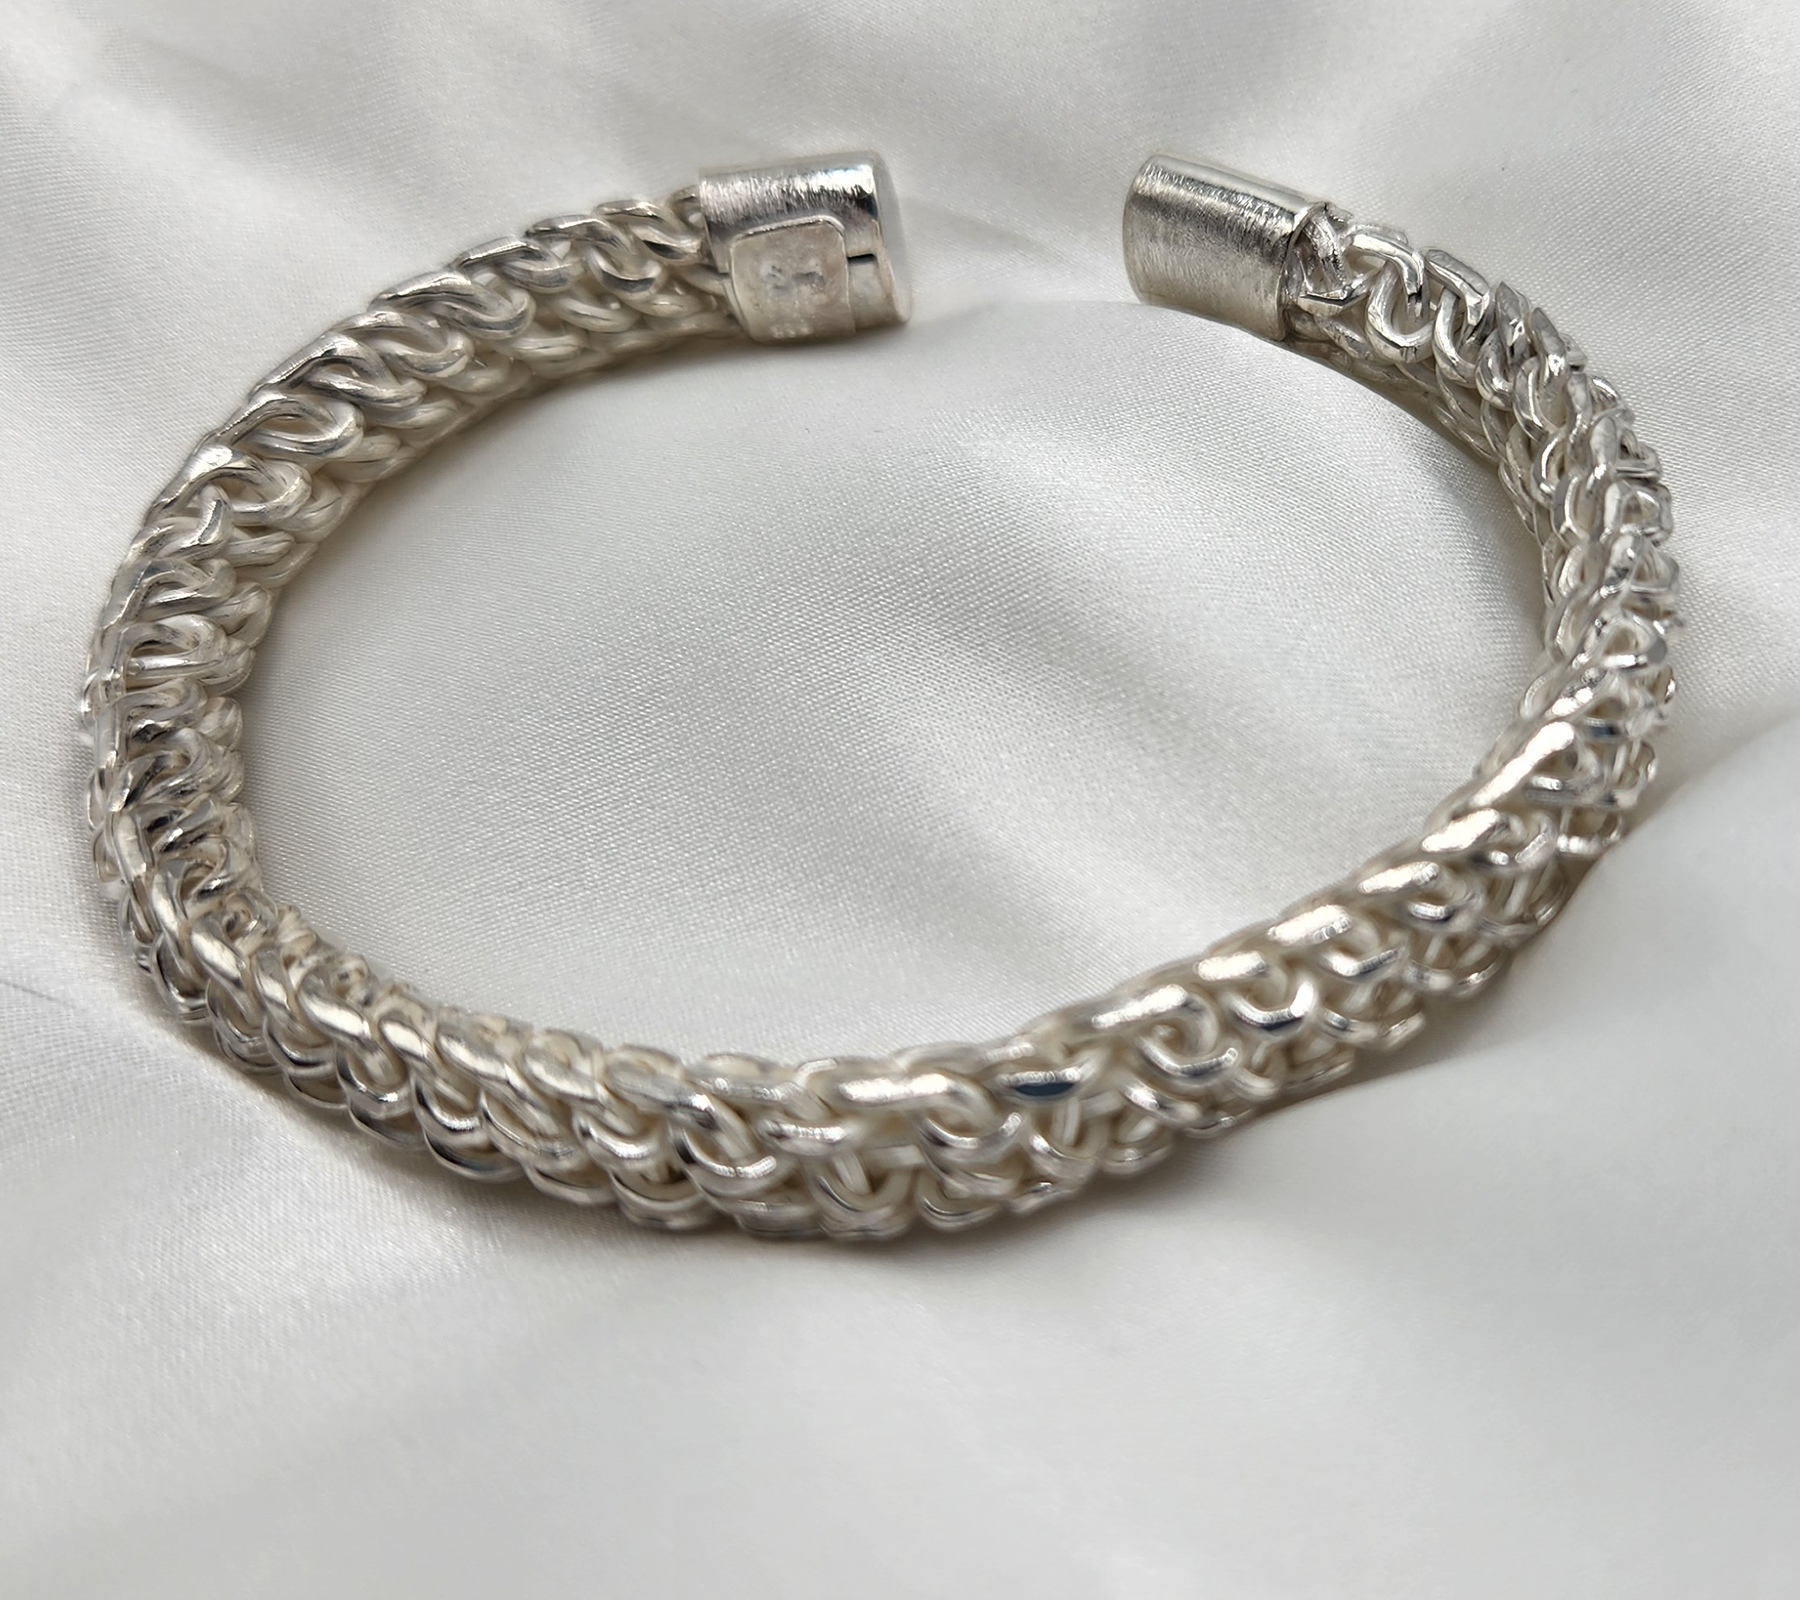 Hand Made Double Braided Sterling Silver Bracelet - Splendor